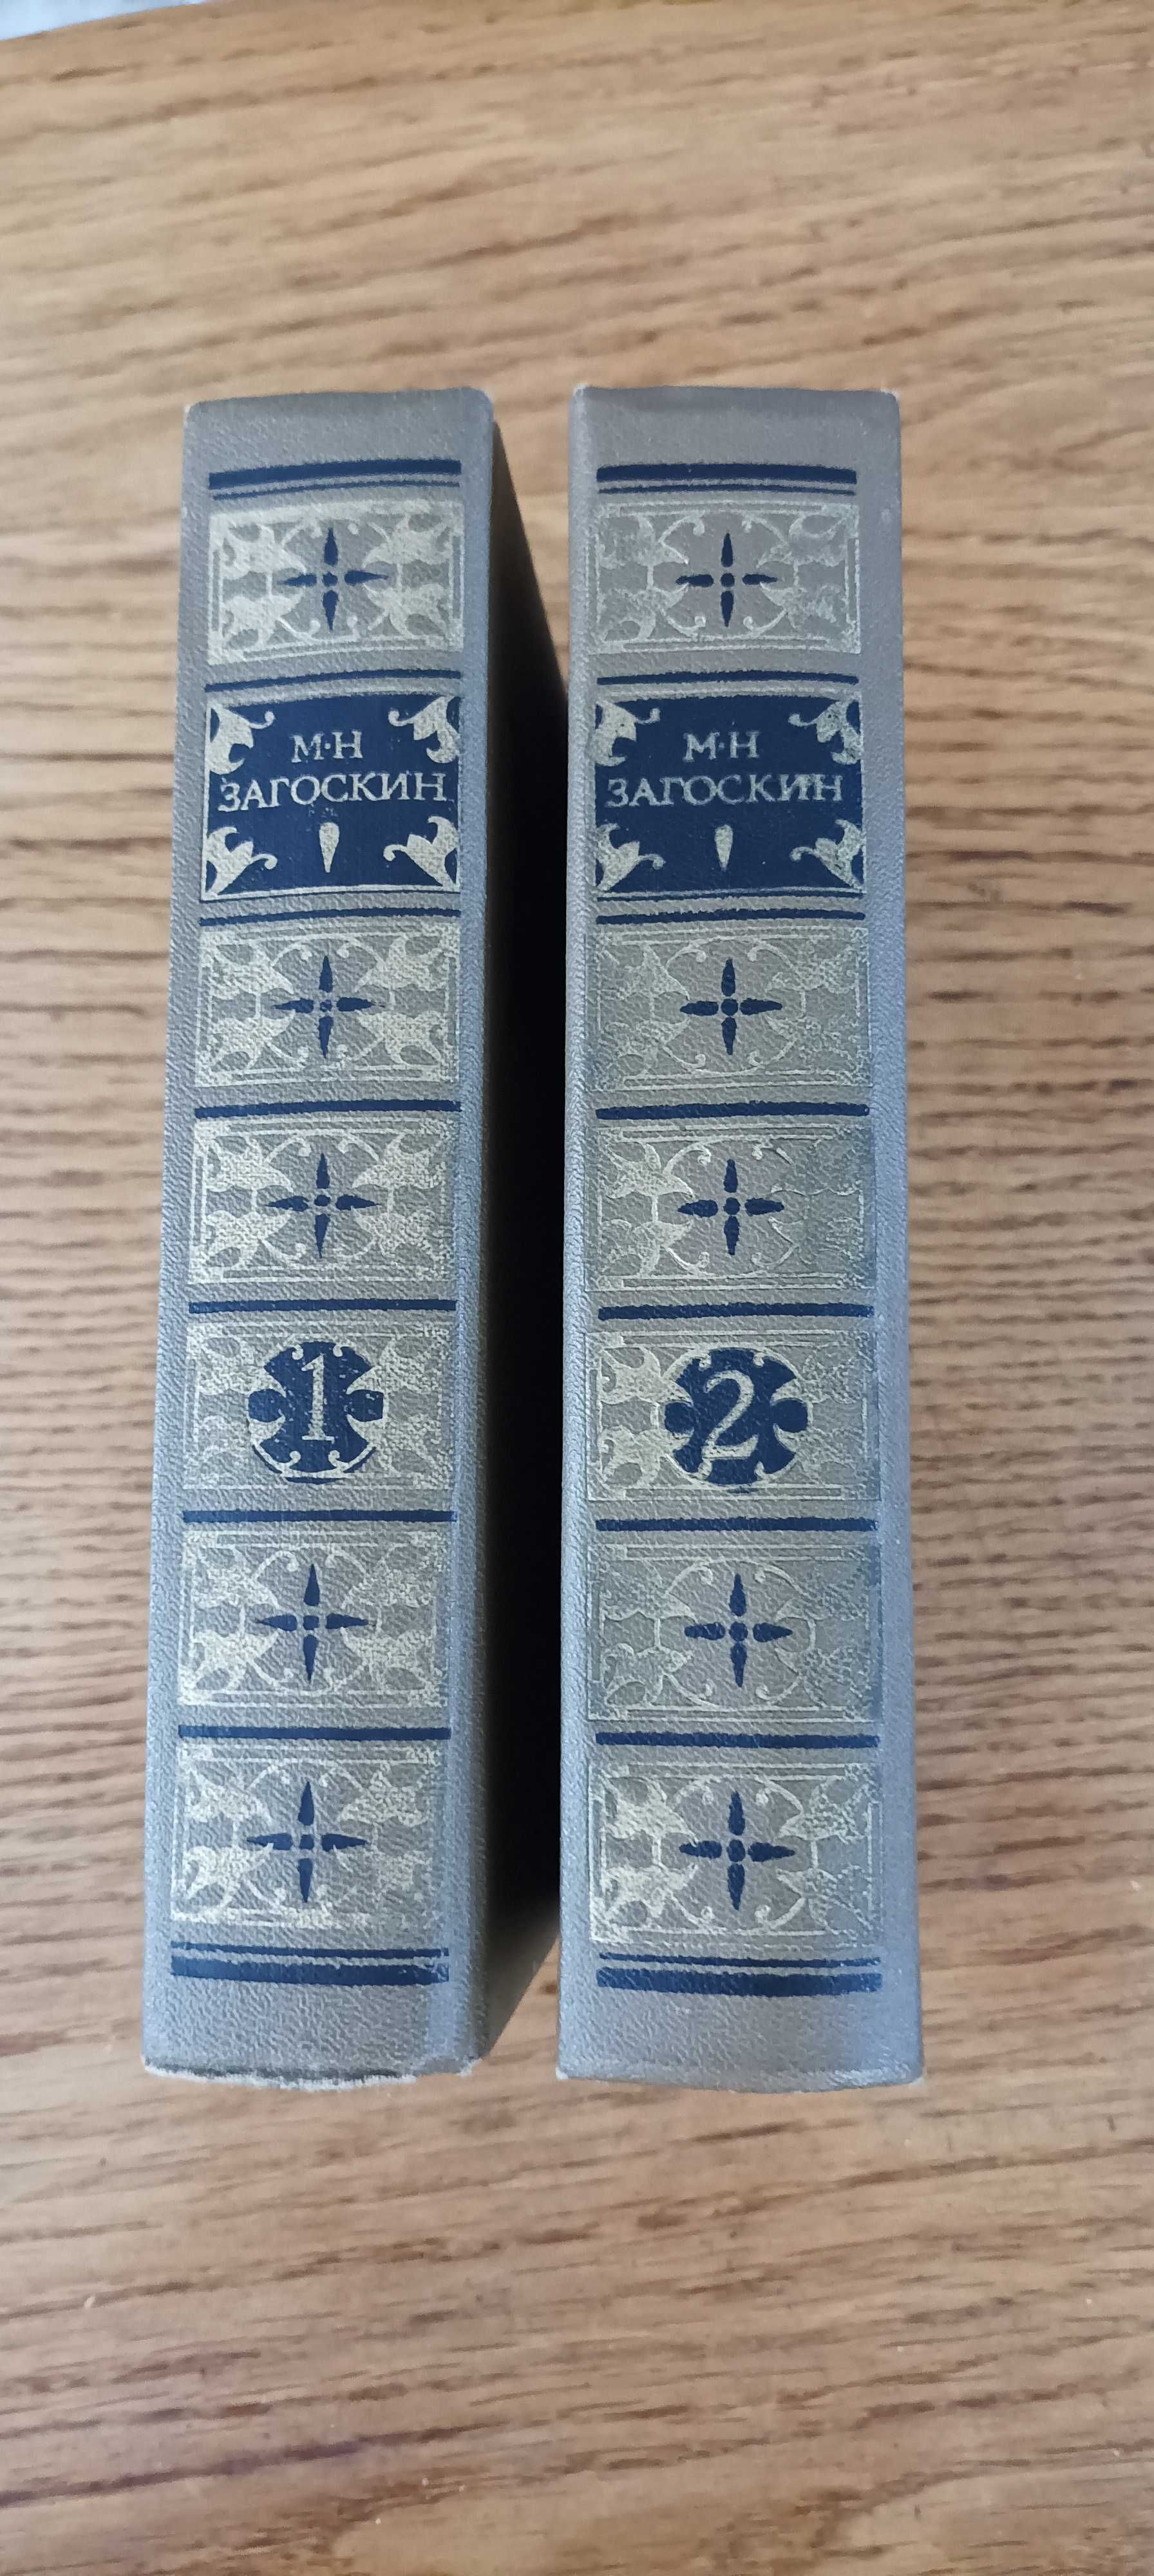 Загоскин М. Н. Сочинения в 2 томах